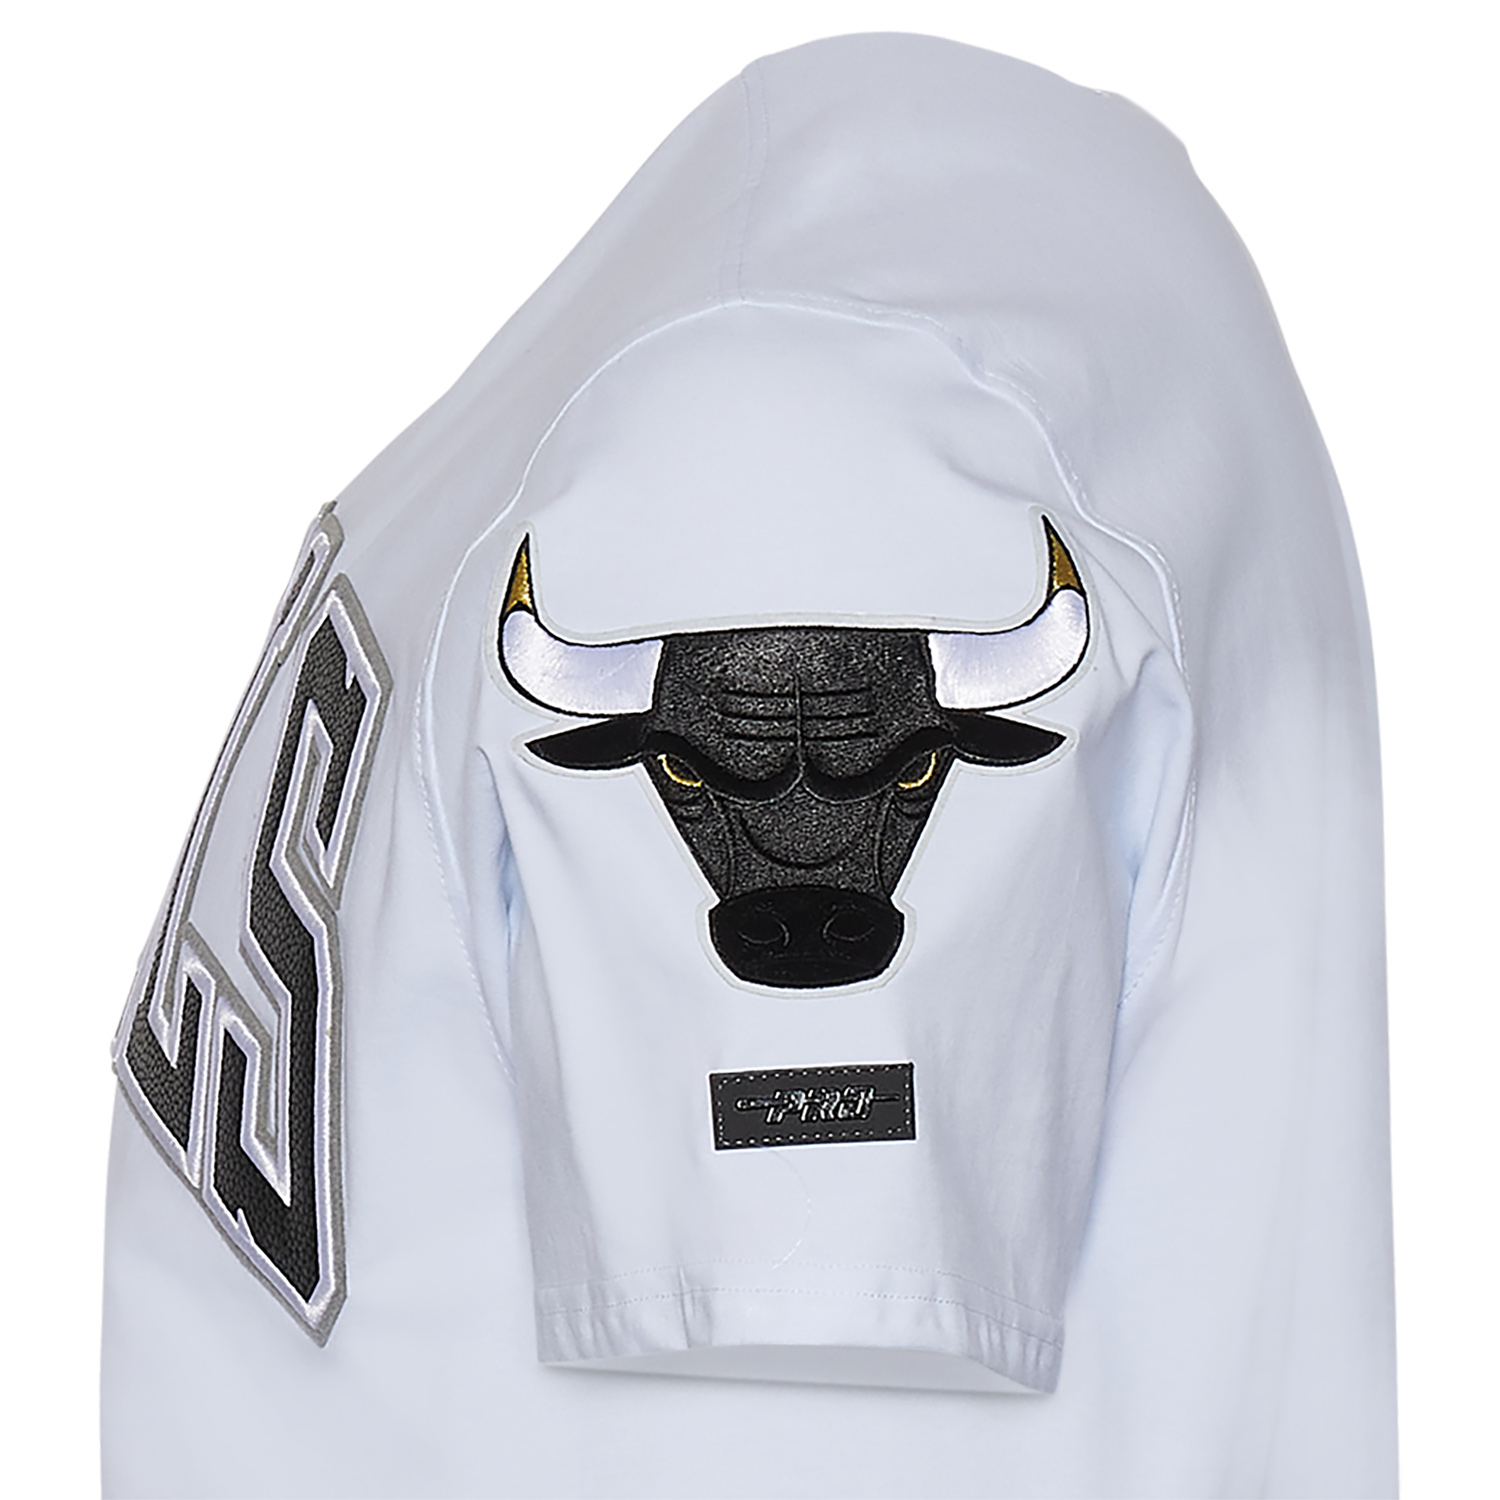 air-jordan-12-playoffs-bulls-shirt-3